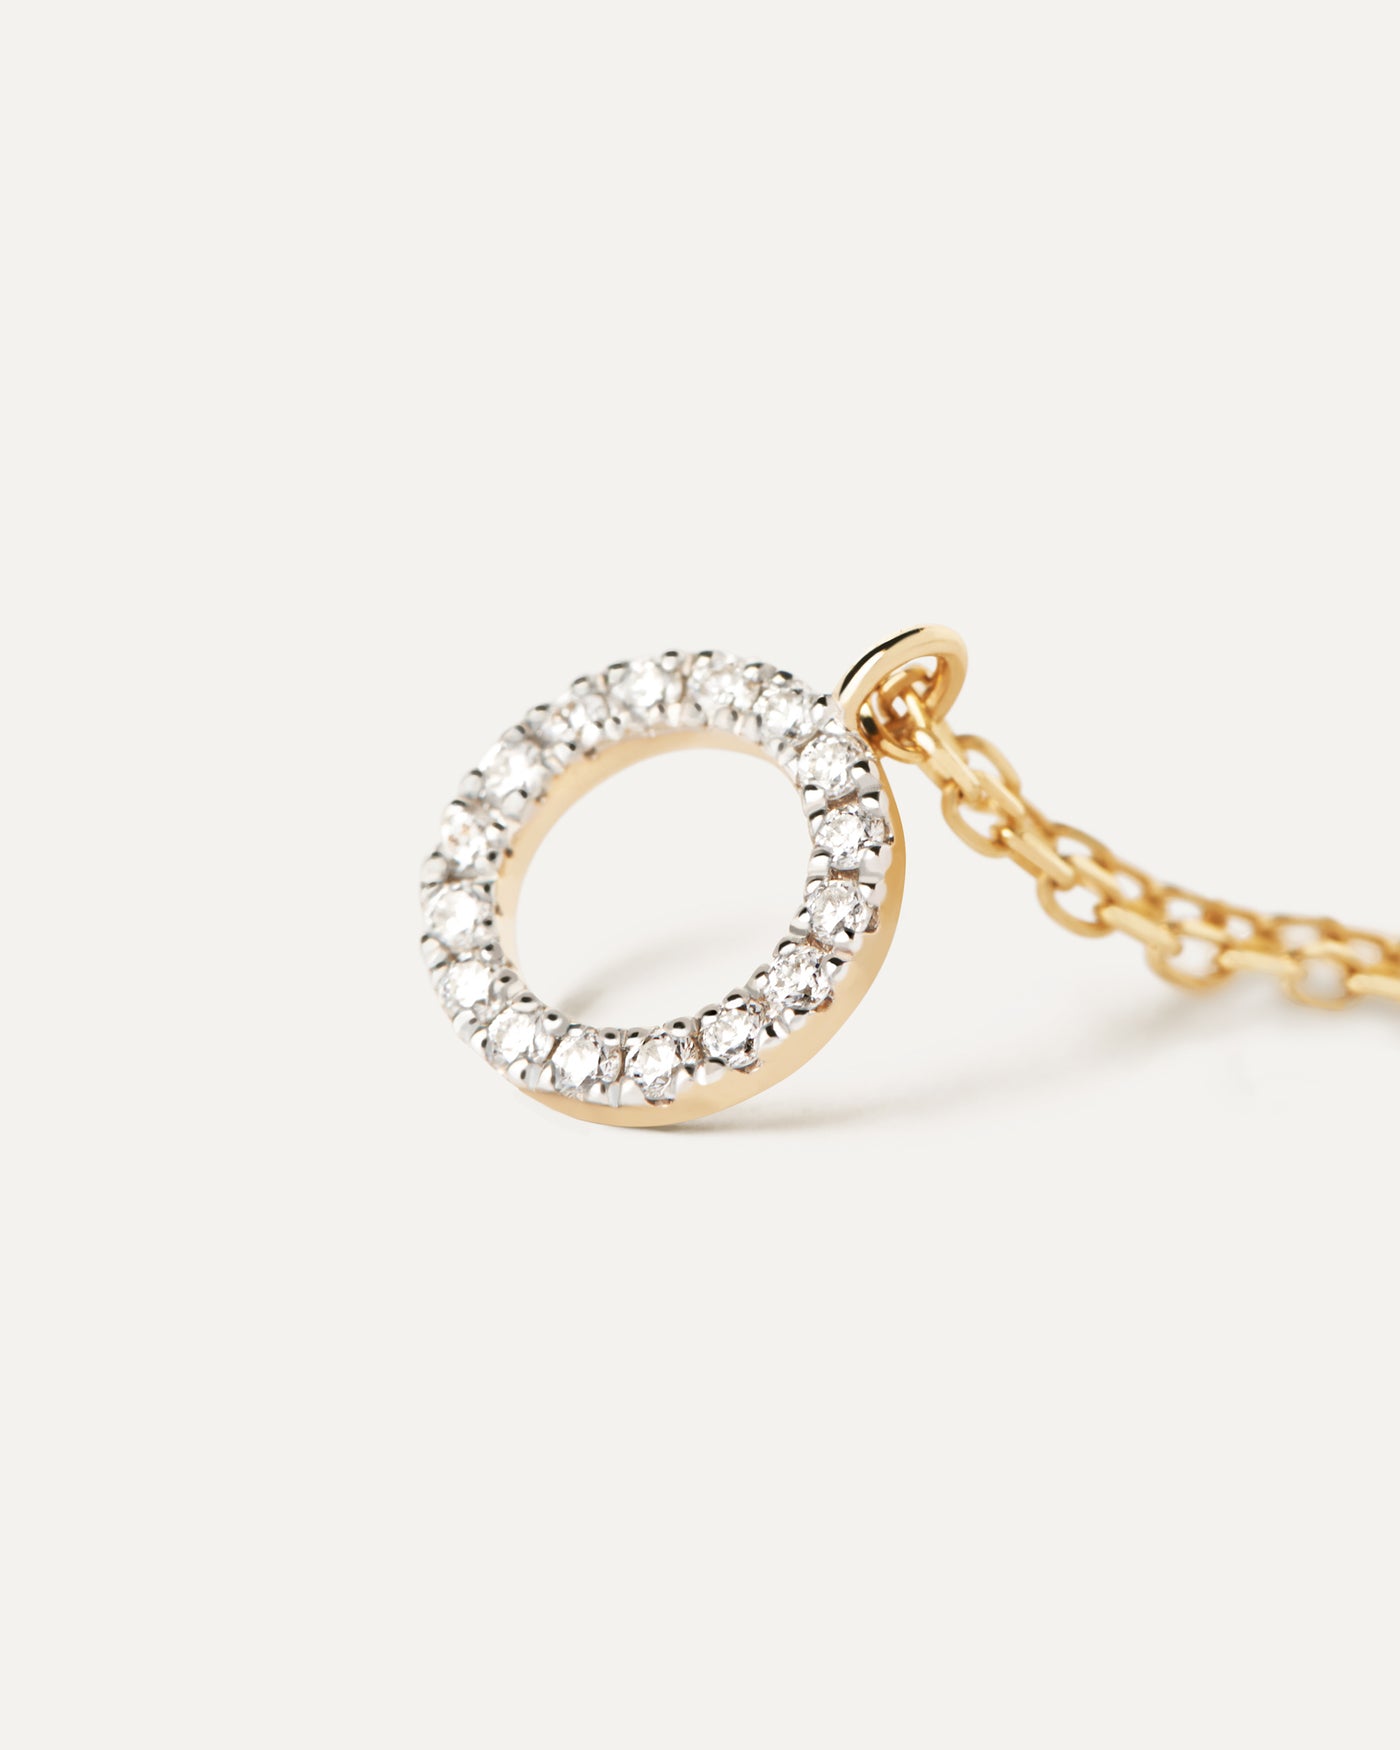 Circle halskette aus gold mit diamanten. Halskette aus massivem Gelbgold mit kreisförmigen Anhänger mit Laborgezüchtete Diamanten . Erhalten Sie die neuesten Produkte von PDPAOLA. Geben Sie Ihre Bestellung sicher auf und erhalten Sie diesen Bestseller.